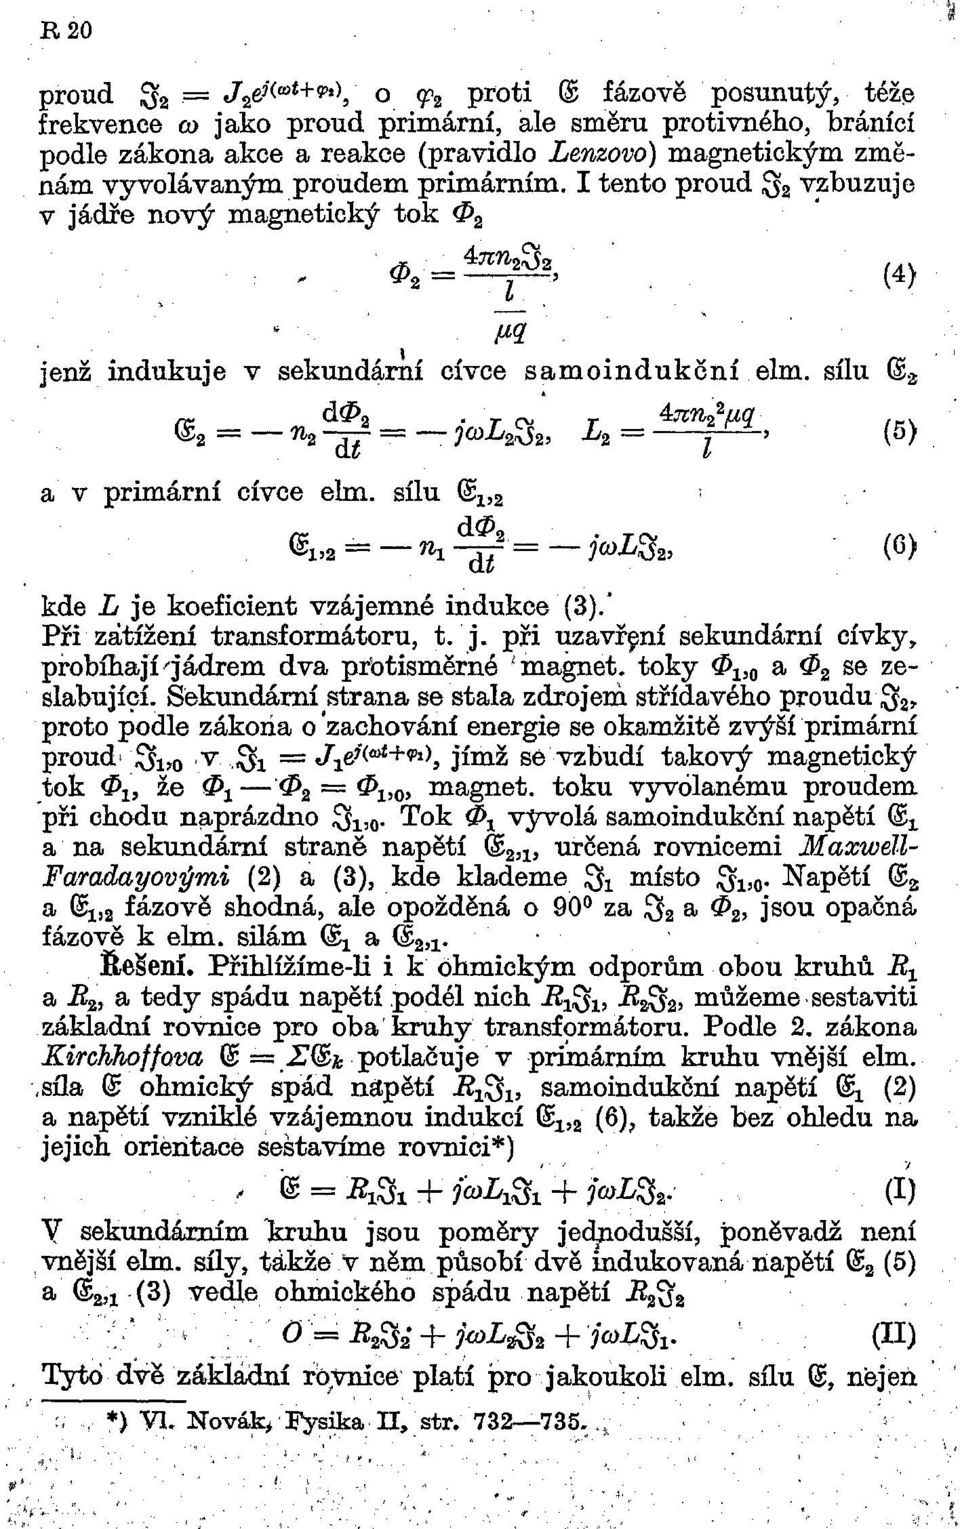 sílu Gš a m <š = 71-^- = ja>l $, L = ^_> (5) a v primární cívce elm. sílu @ x з 1 * = - n 1 ^ = -jcoщ г, (0) kde L je koeficient vzájemné indukce (3).* Při zátížení transformátoru, t. j. při uzavřçní sekunđární cívky, pŕobíhají^ádrem dva pťotism rné ^magnet.